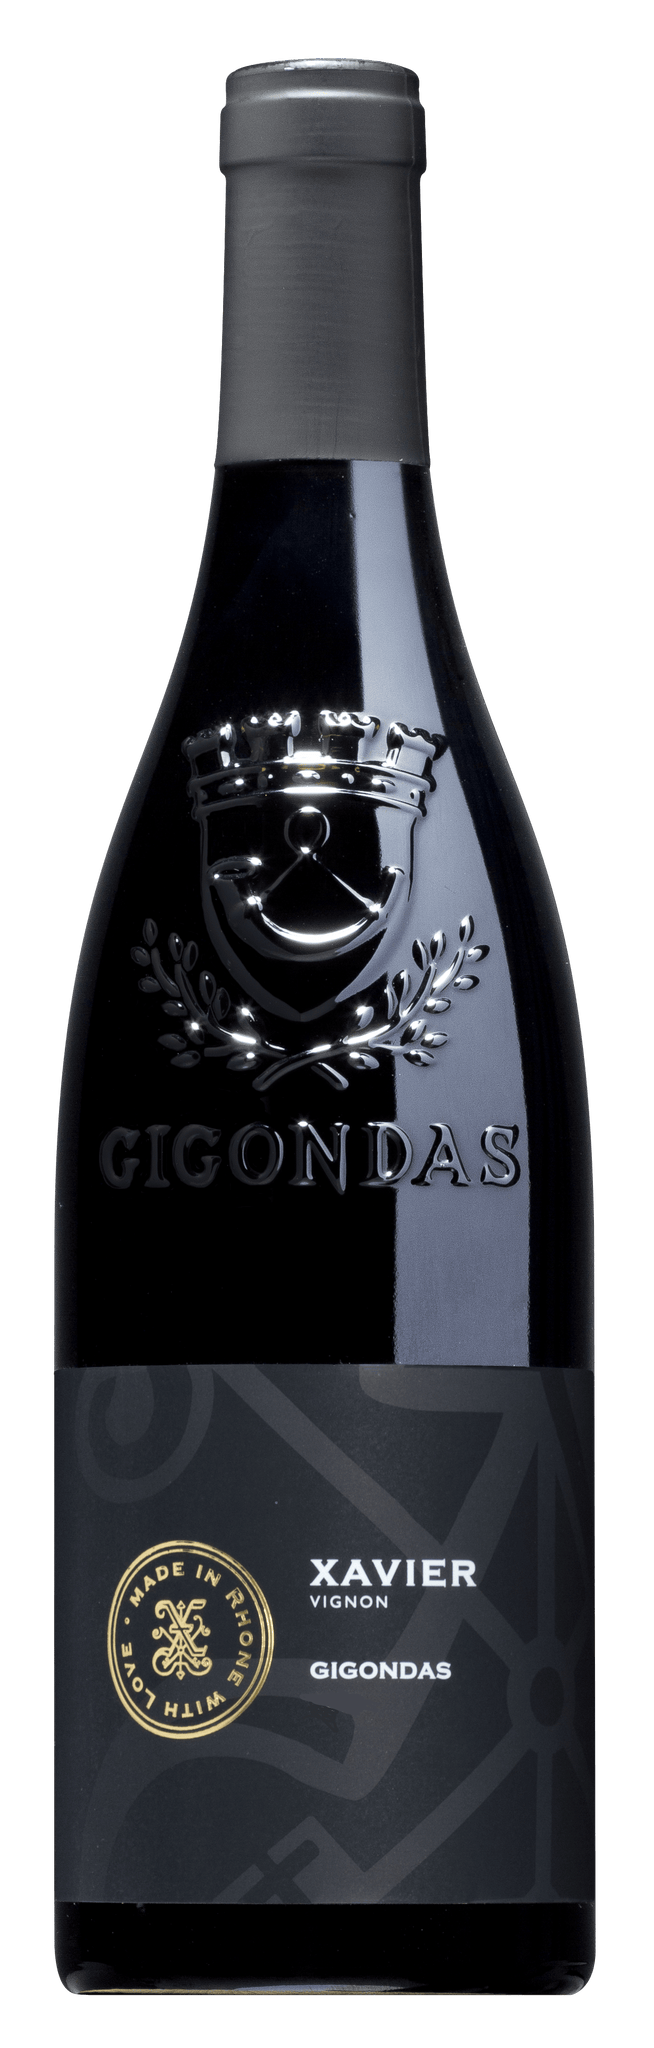 Gigondas 2019, Xavier Vignon (1x75cl)